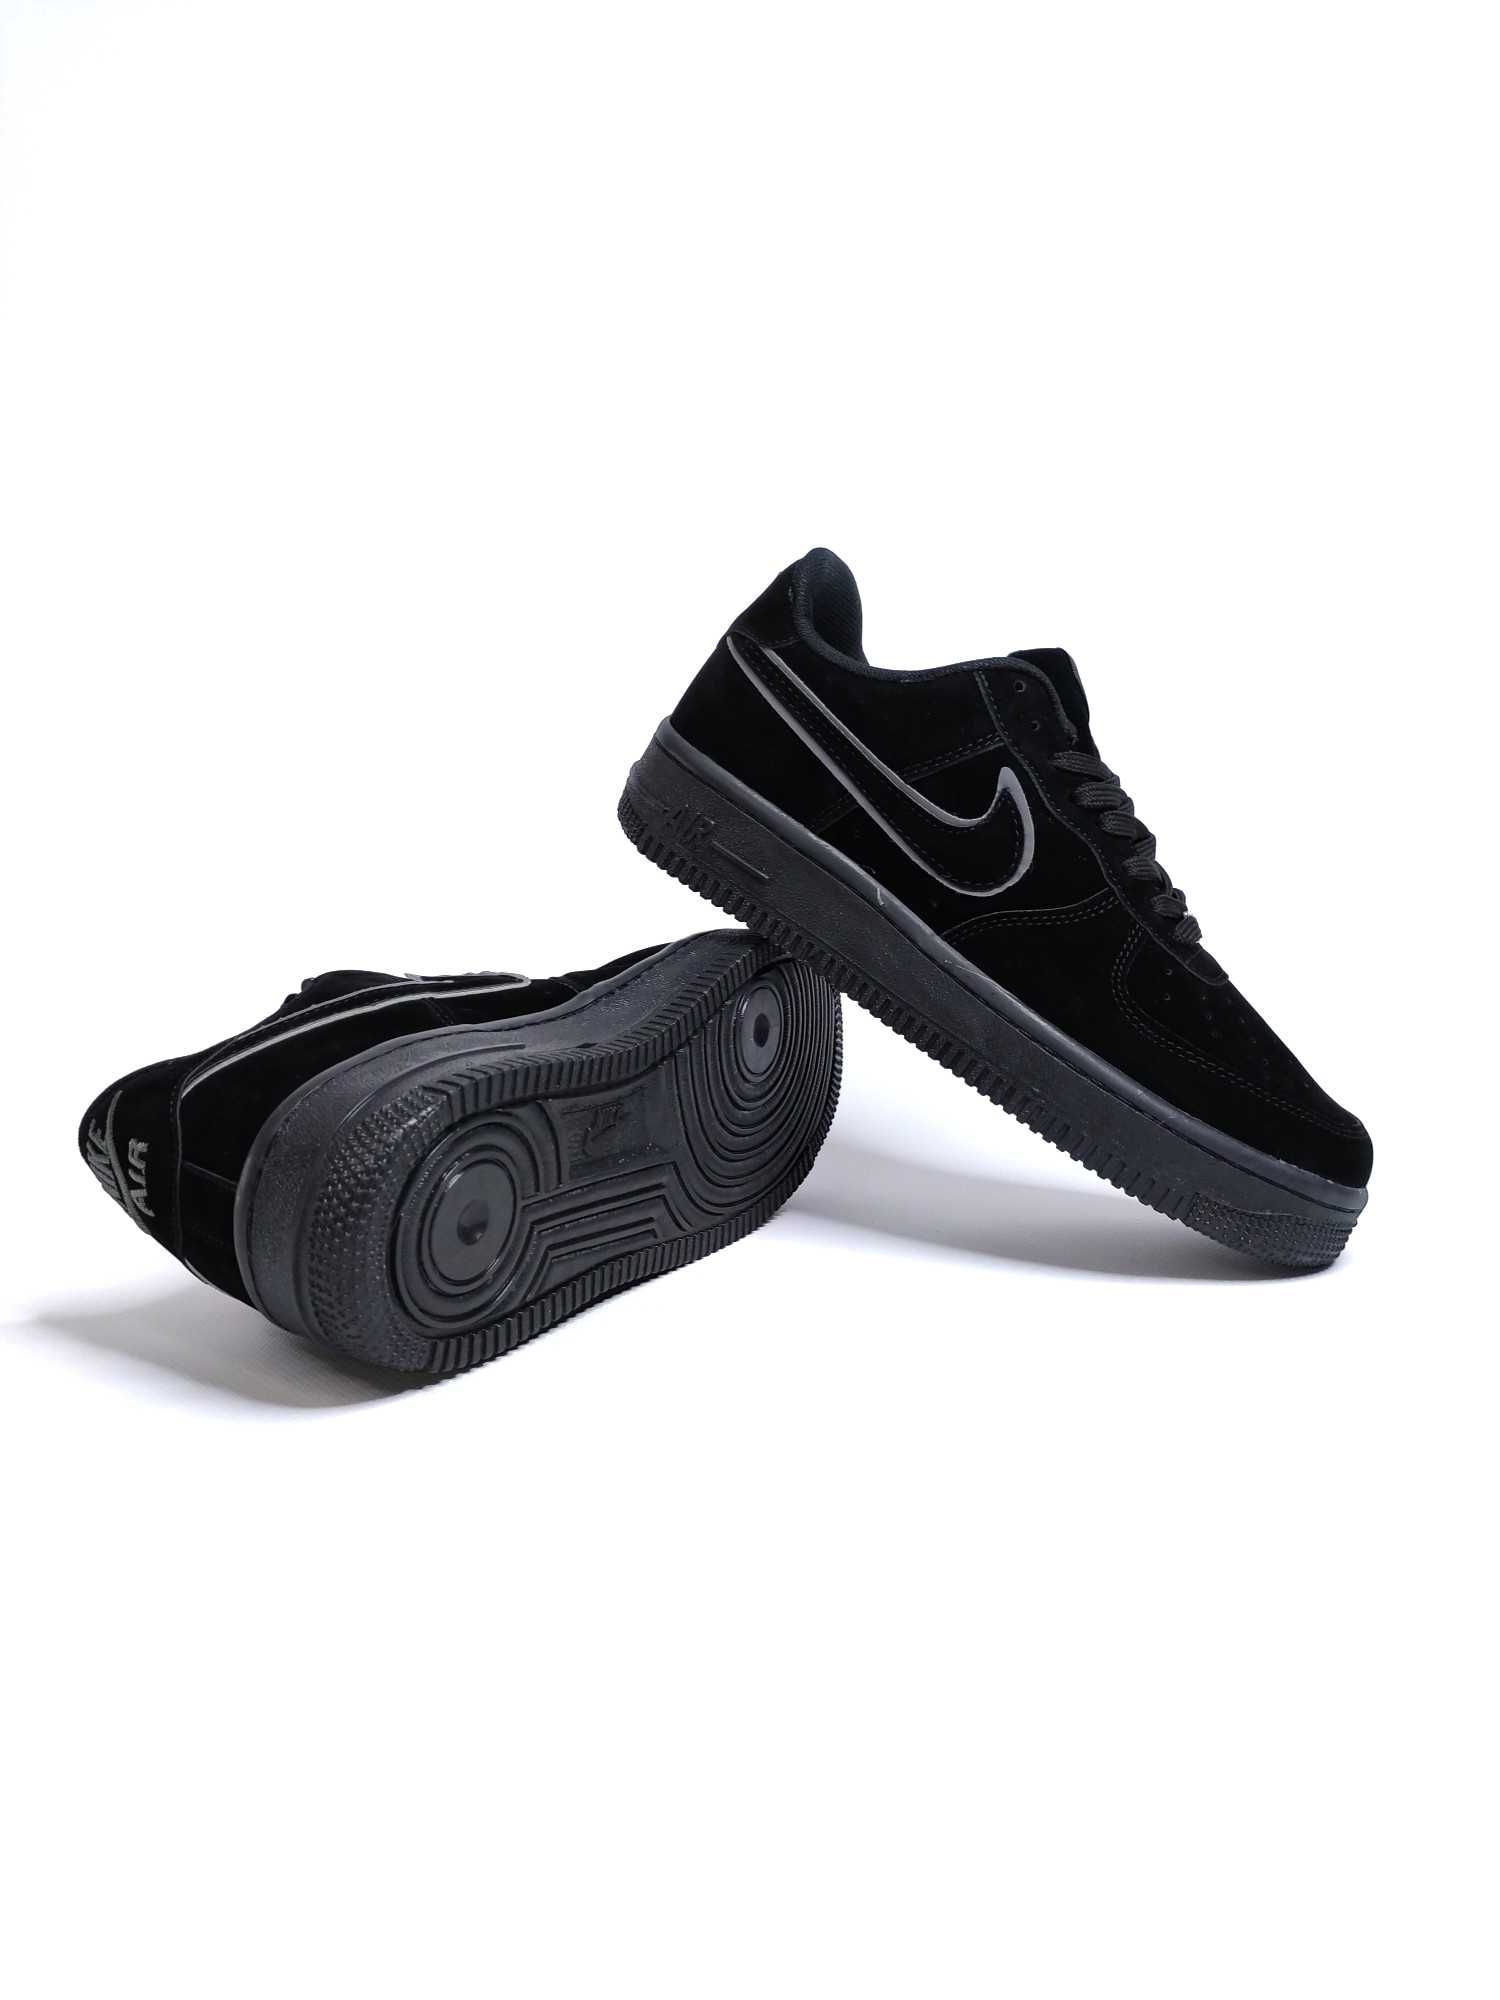 Мужские кроссовки Nike Air Force 1 Black. Размер 40-44. Найк